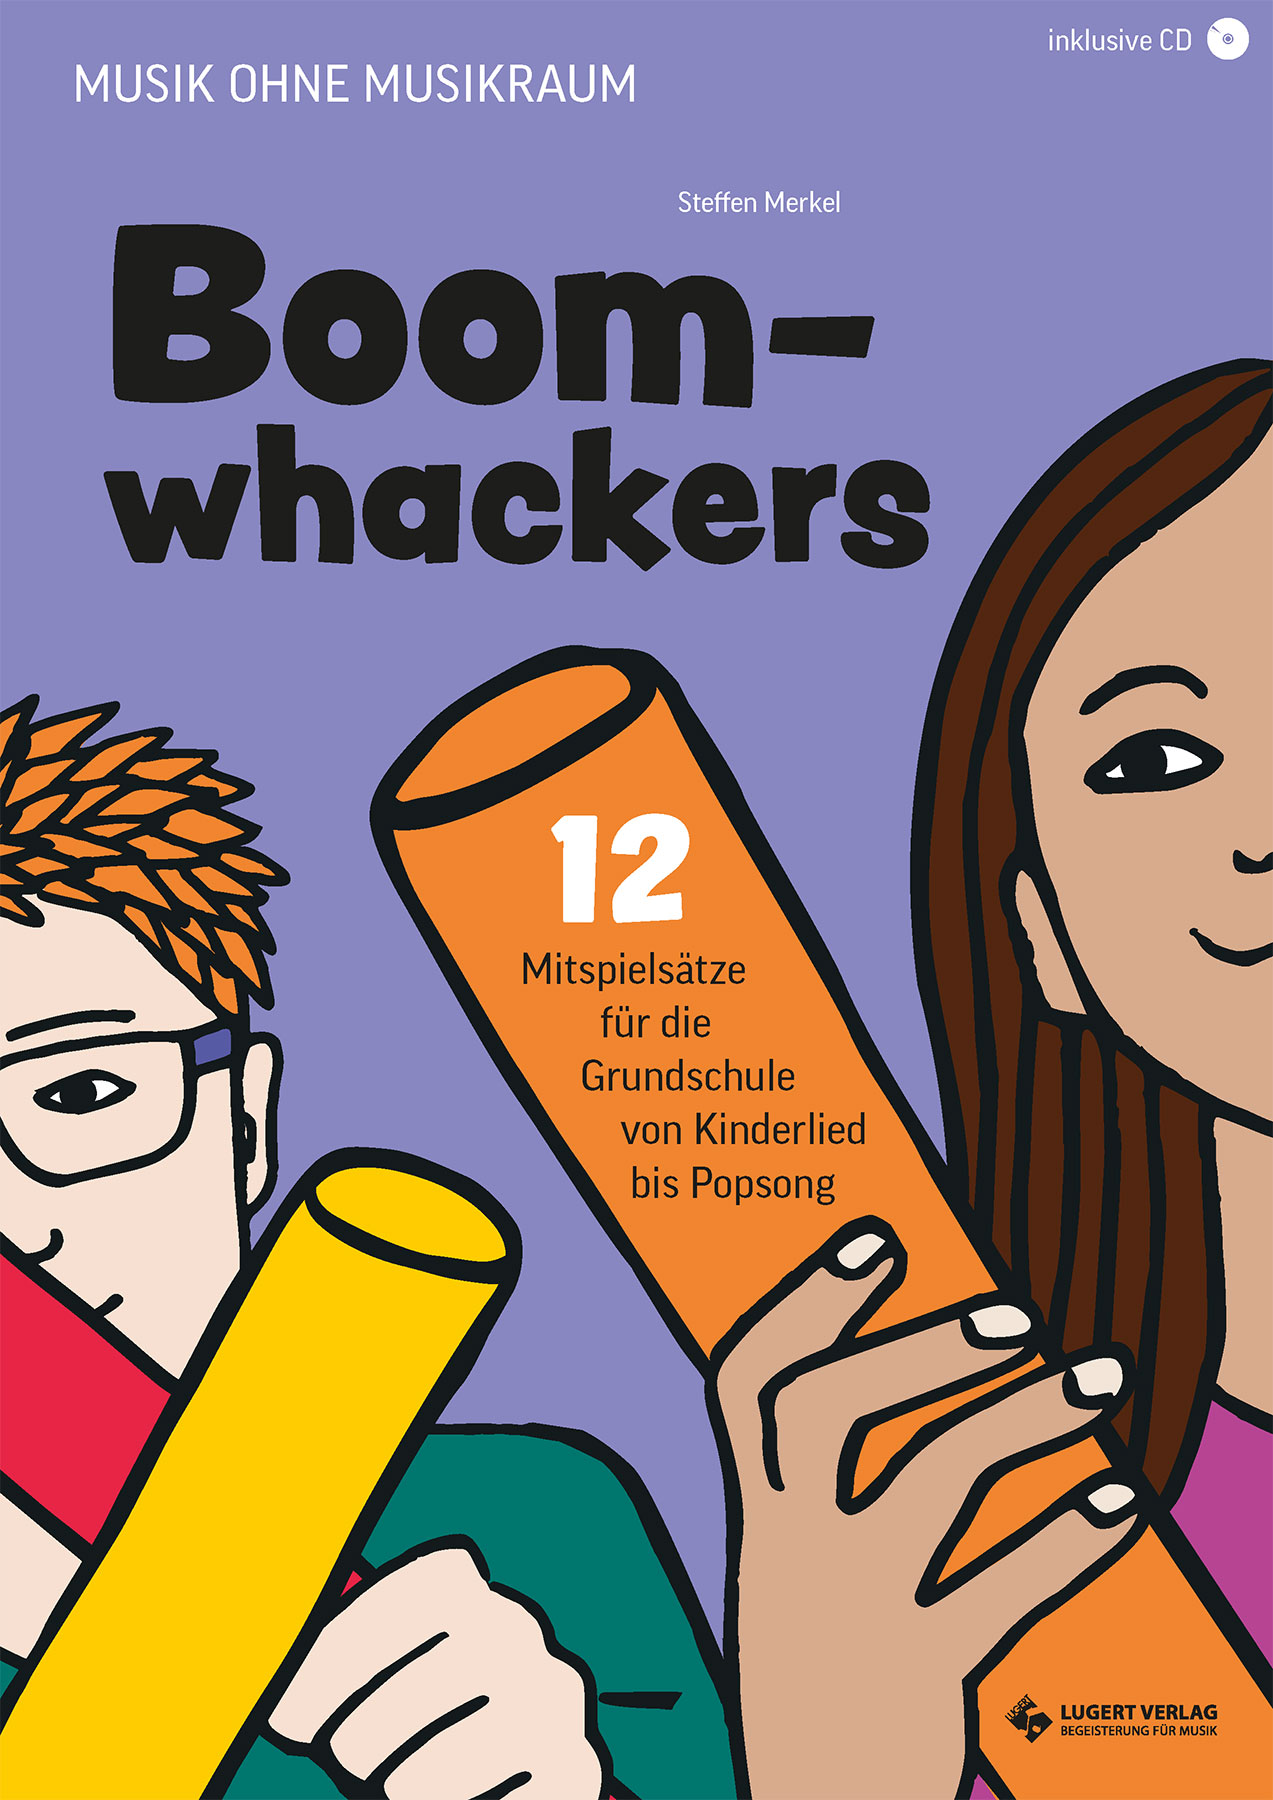 Boomwhackers - 12 Mitspielsätze für die Grundschule 2